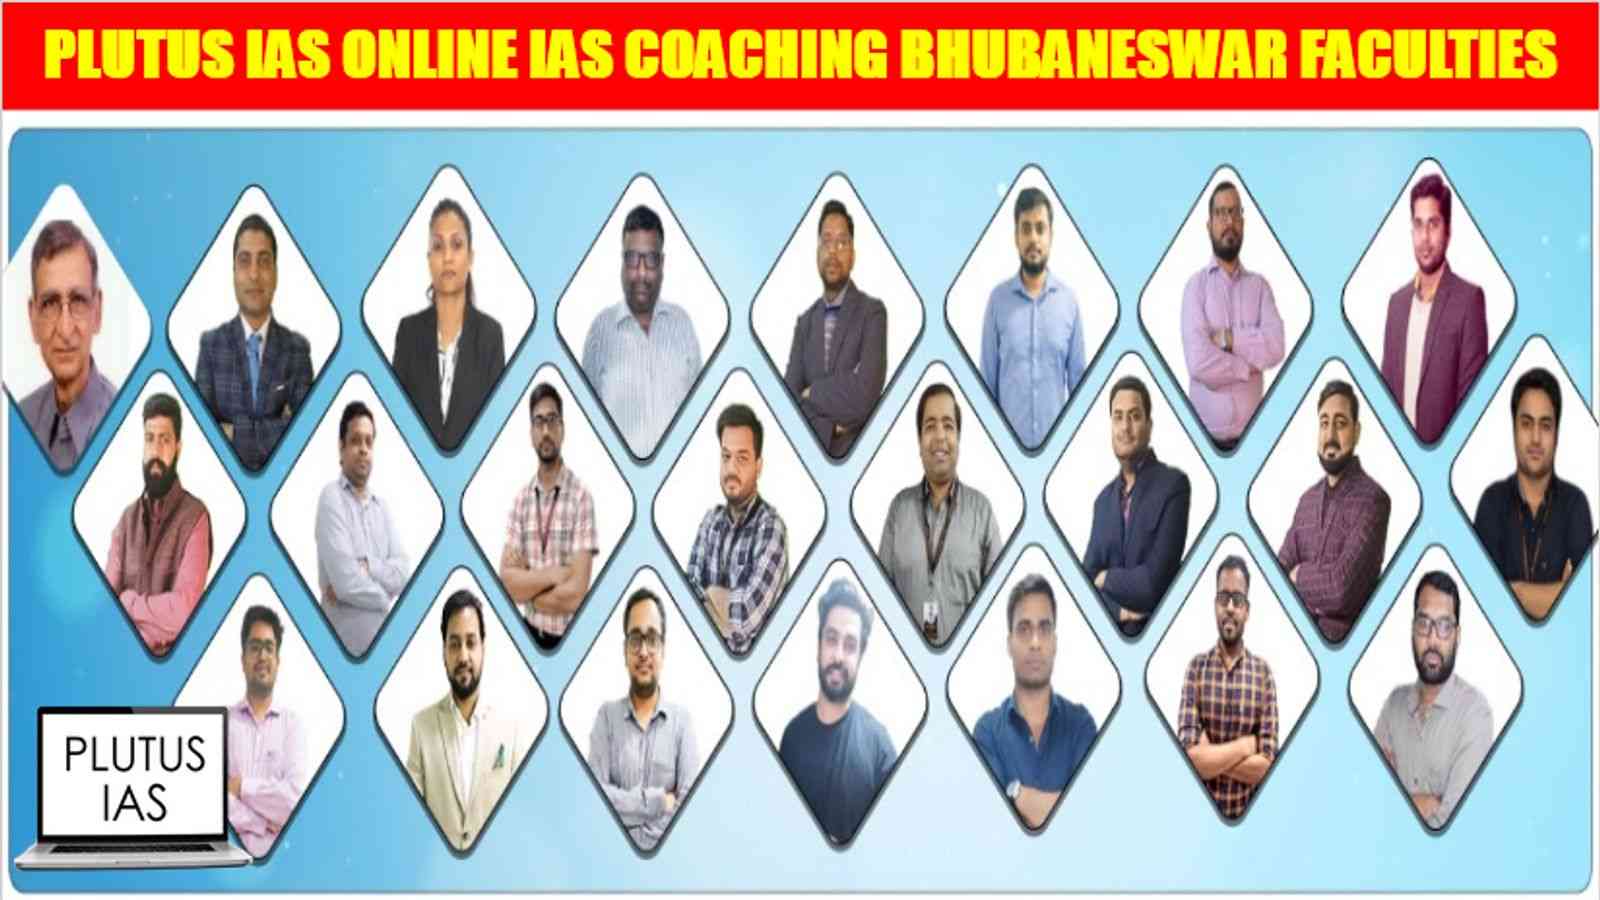 Plutus IAS Online Coaching Bhubaneswar Faculties